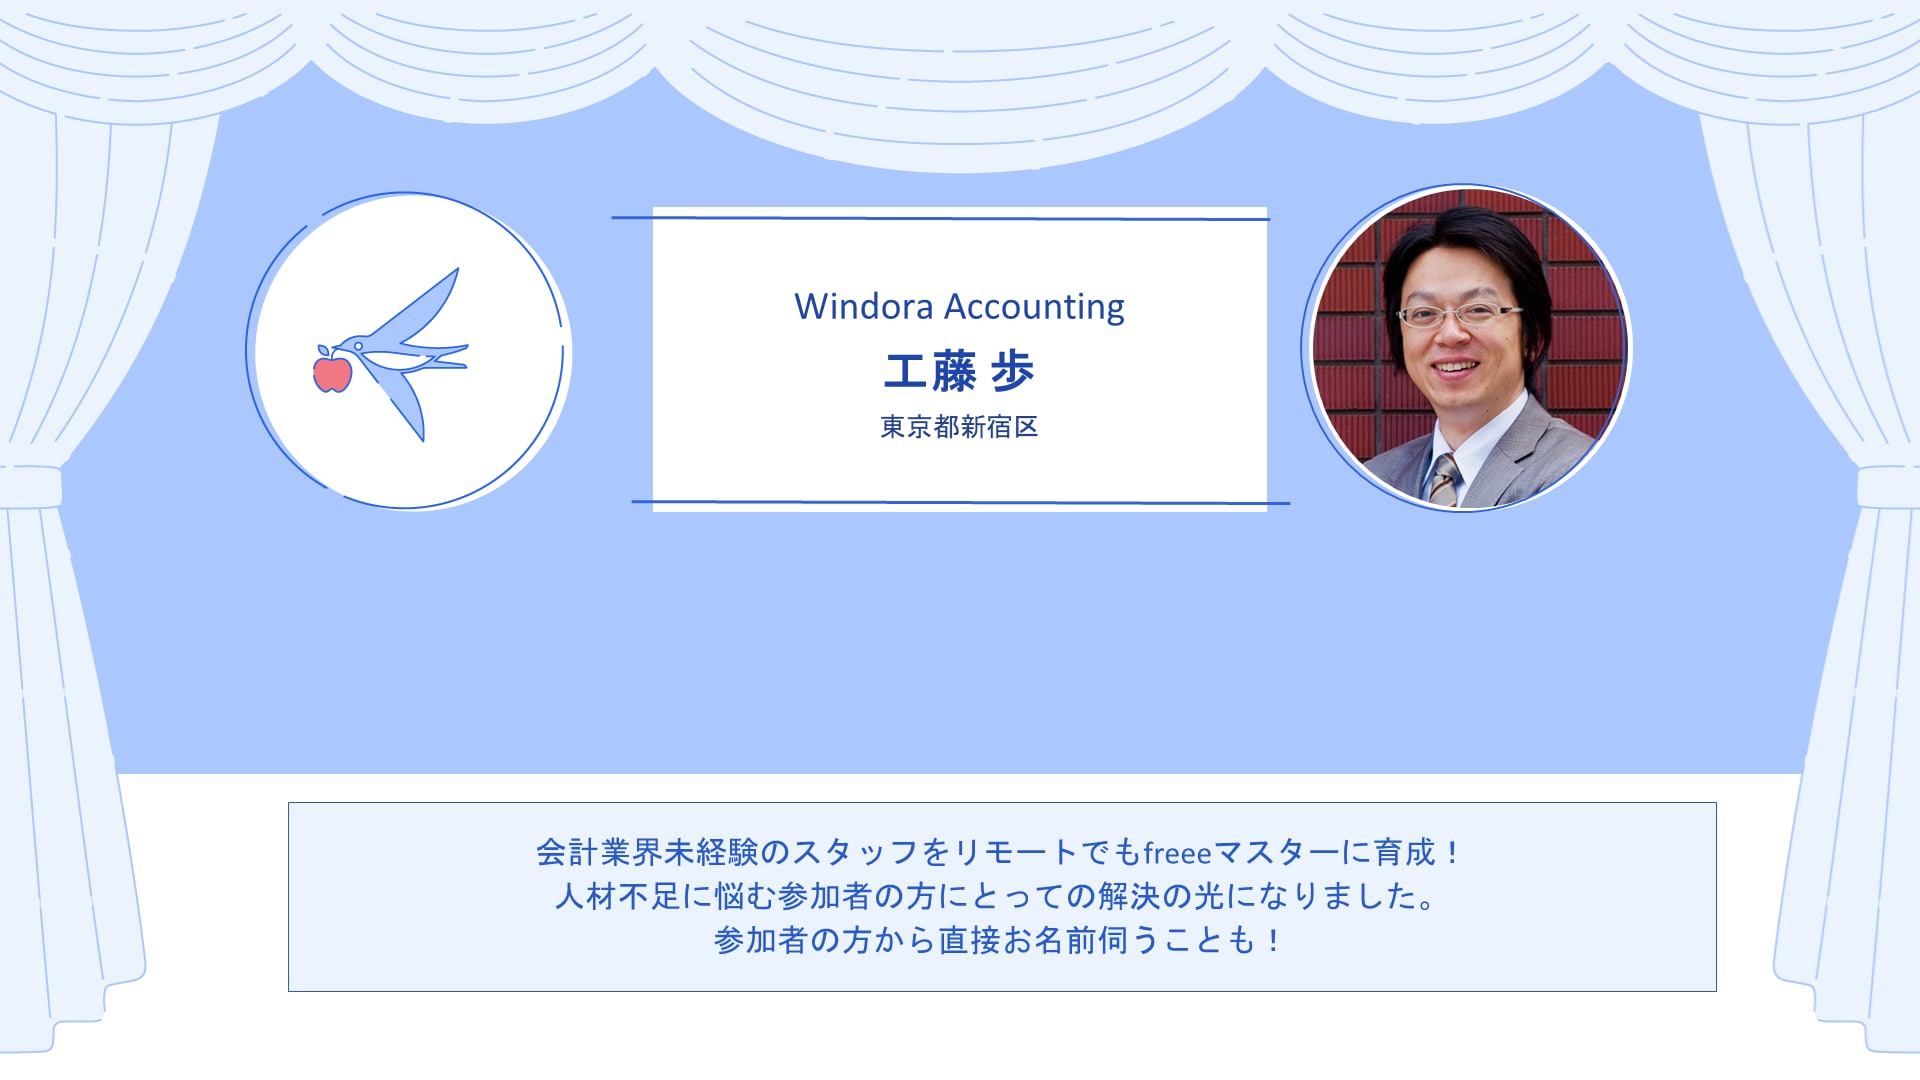 Windora Accounting　工藤 歩さん